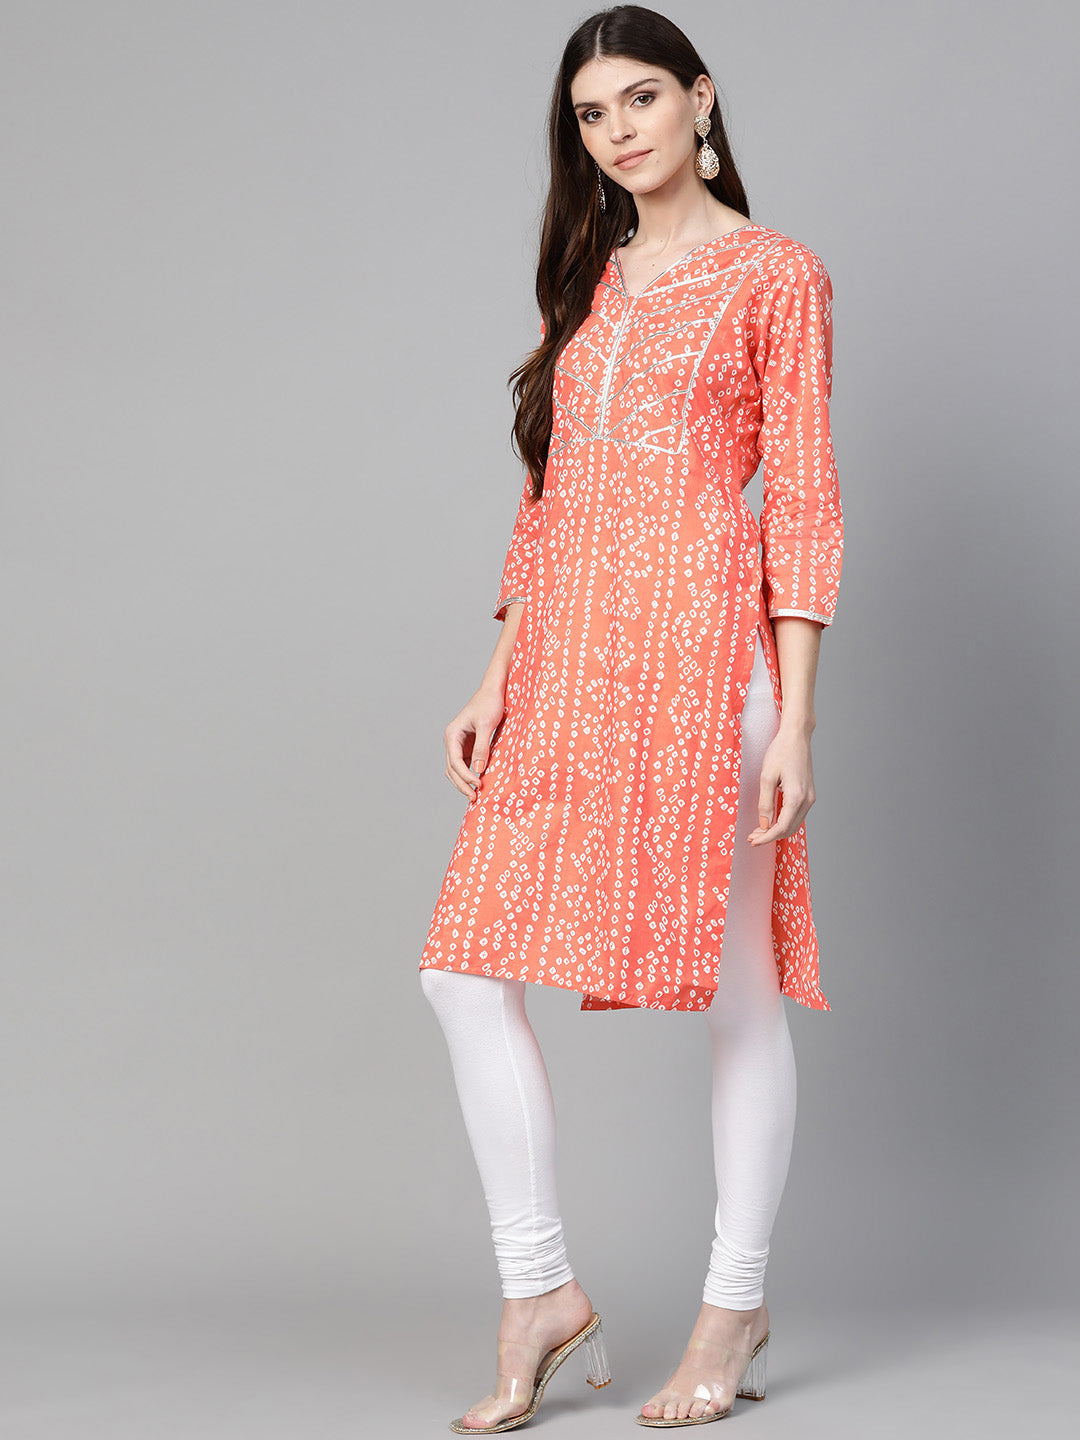 Bhama Couture Women Orange & White Printed Straight Kurta